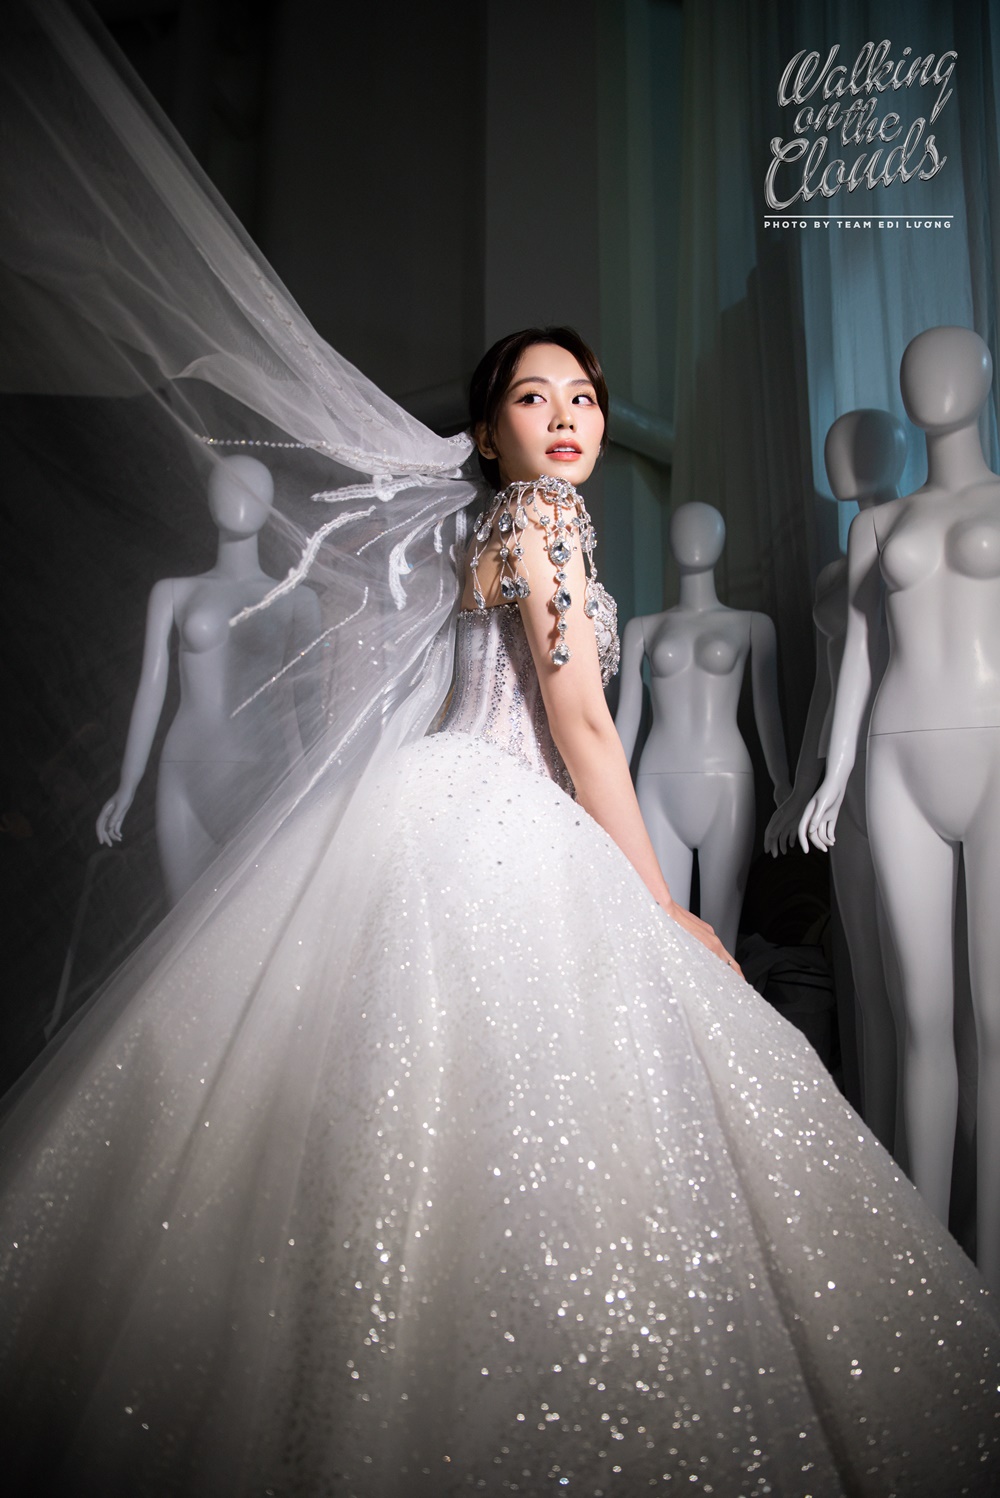 Miss World tiếp tục dời lịch, Hoa hậu Mai Phương bỗng tung loạt ảnh diện váy cưới đẹp như mơ - ảnh 4